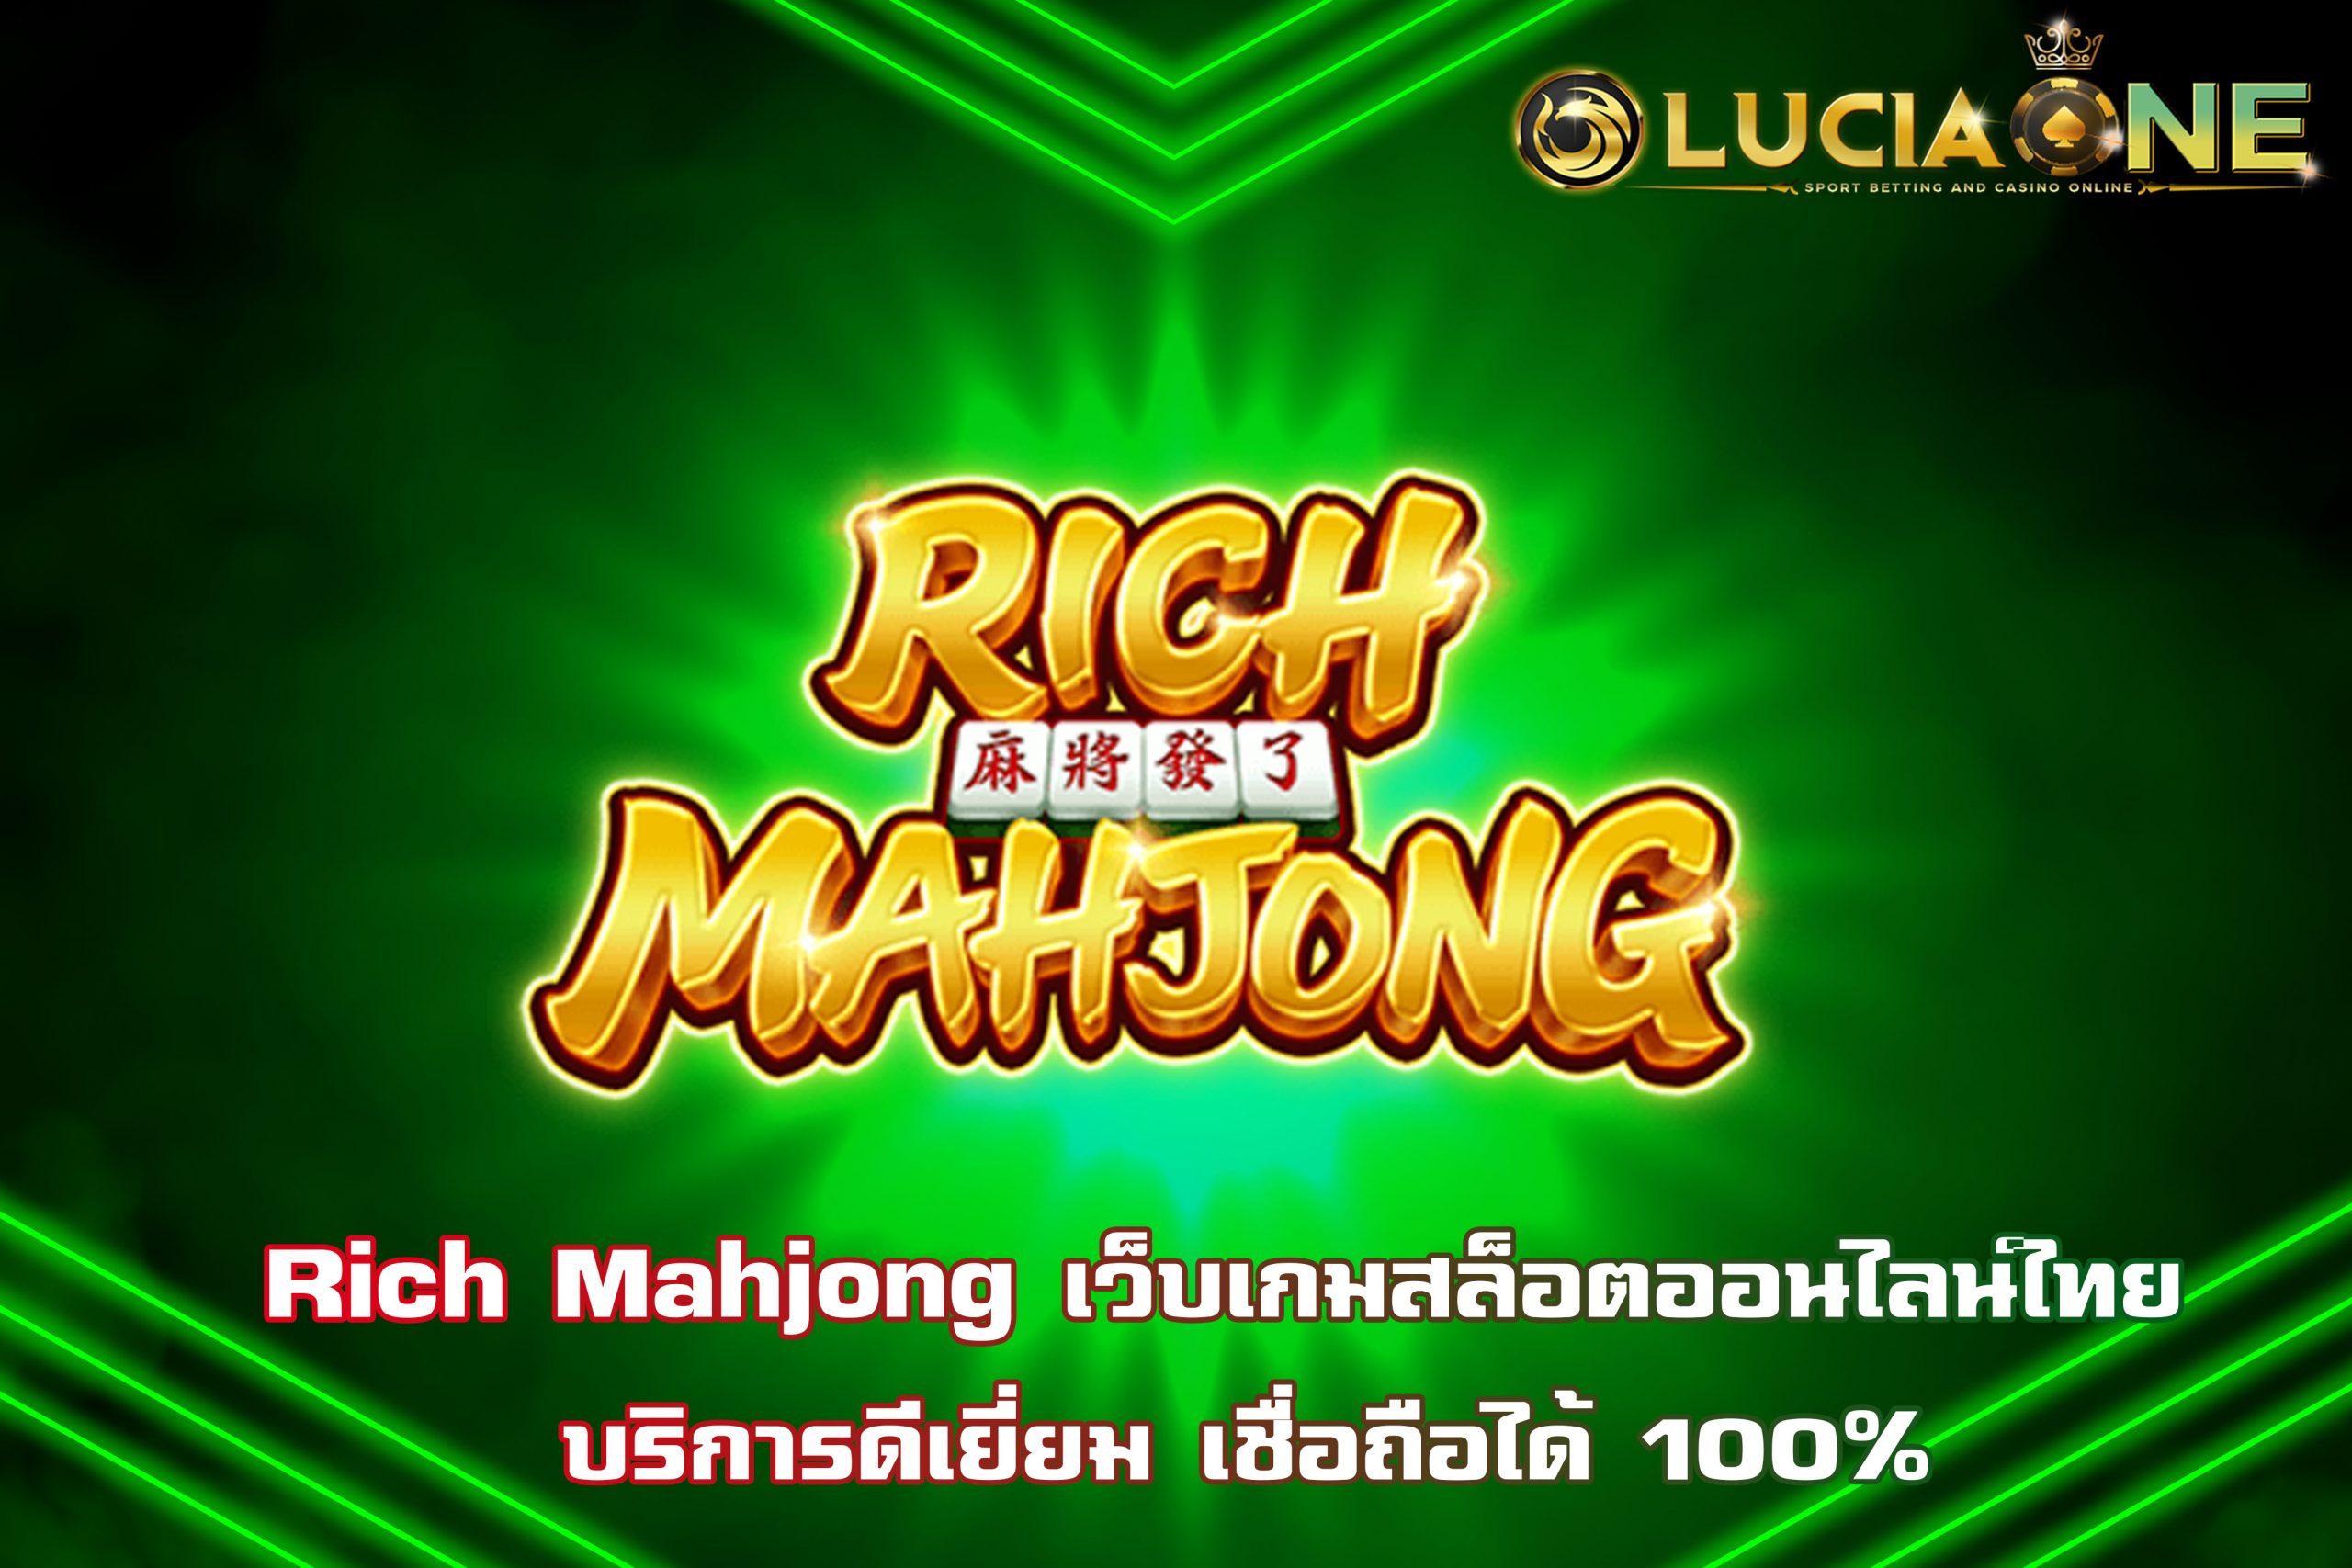 Rich Mahjong เว็บเกมสล็อตออนไลน์ไทย บริการดีเยี่ยม เชื่อถือได้ 100%